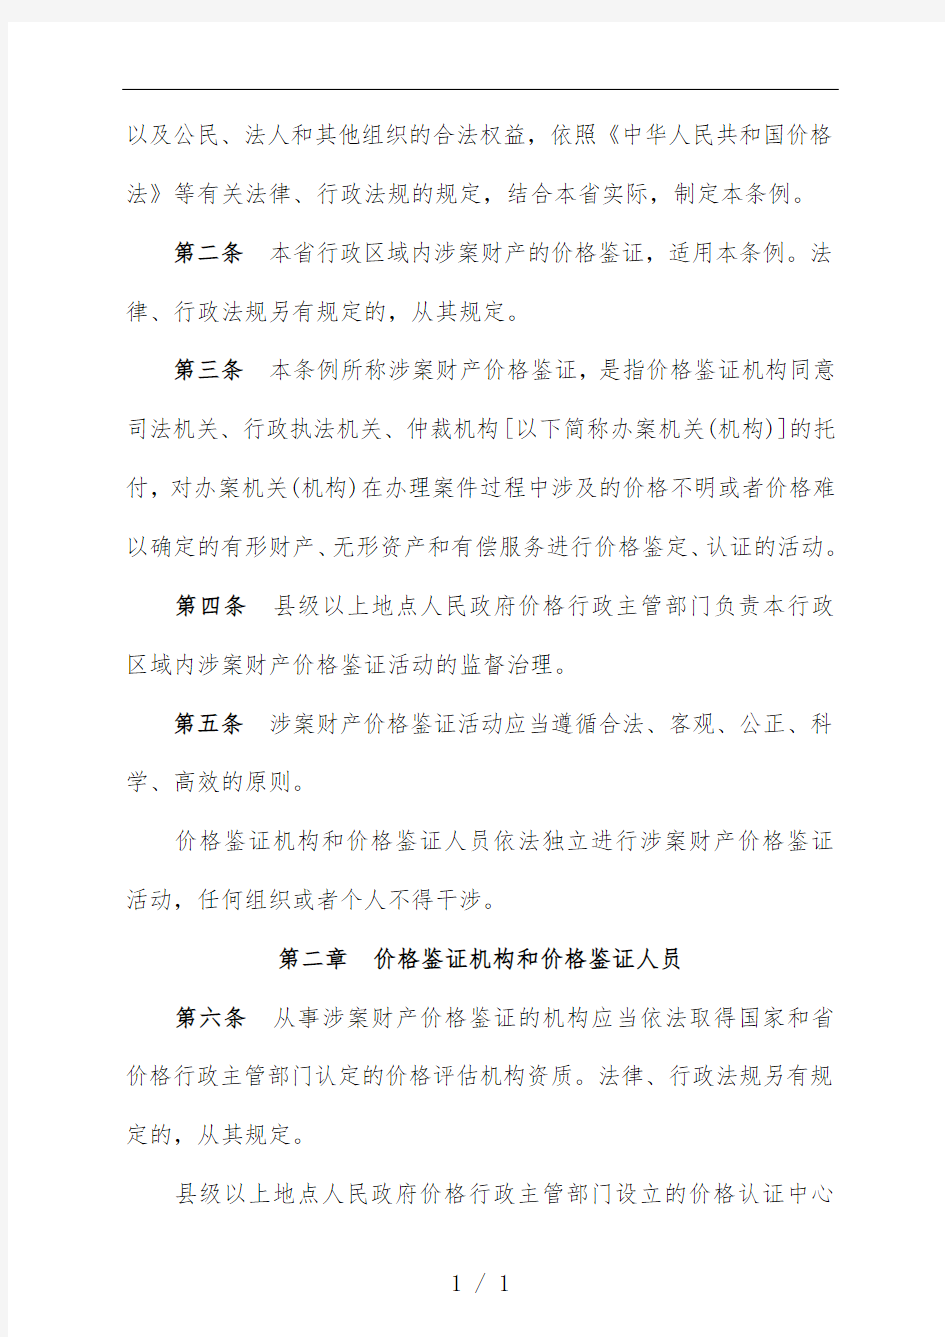 江苏省涉案财产价格鉴证规范条例解析